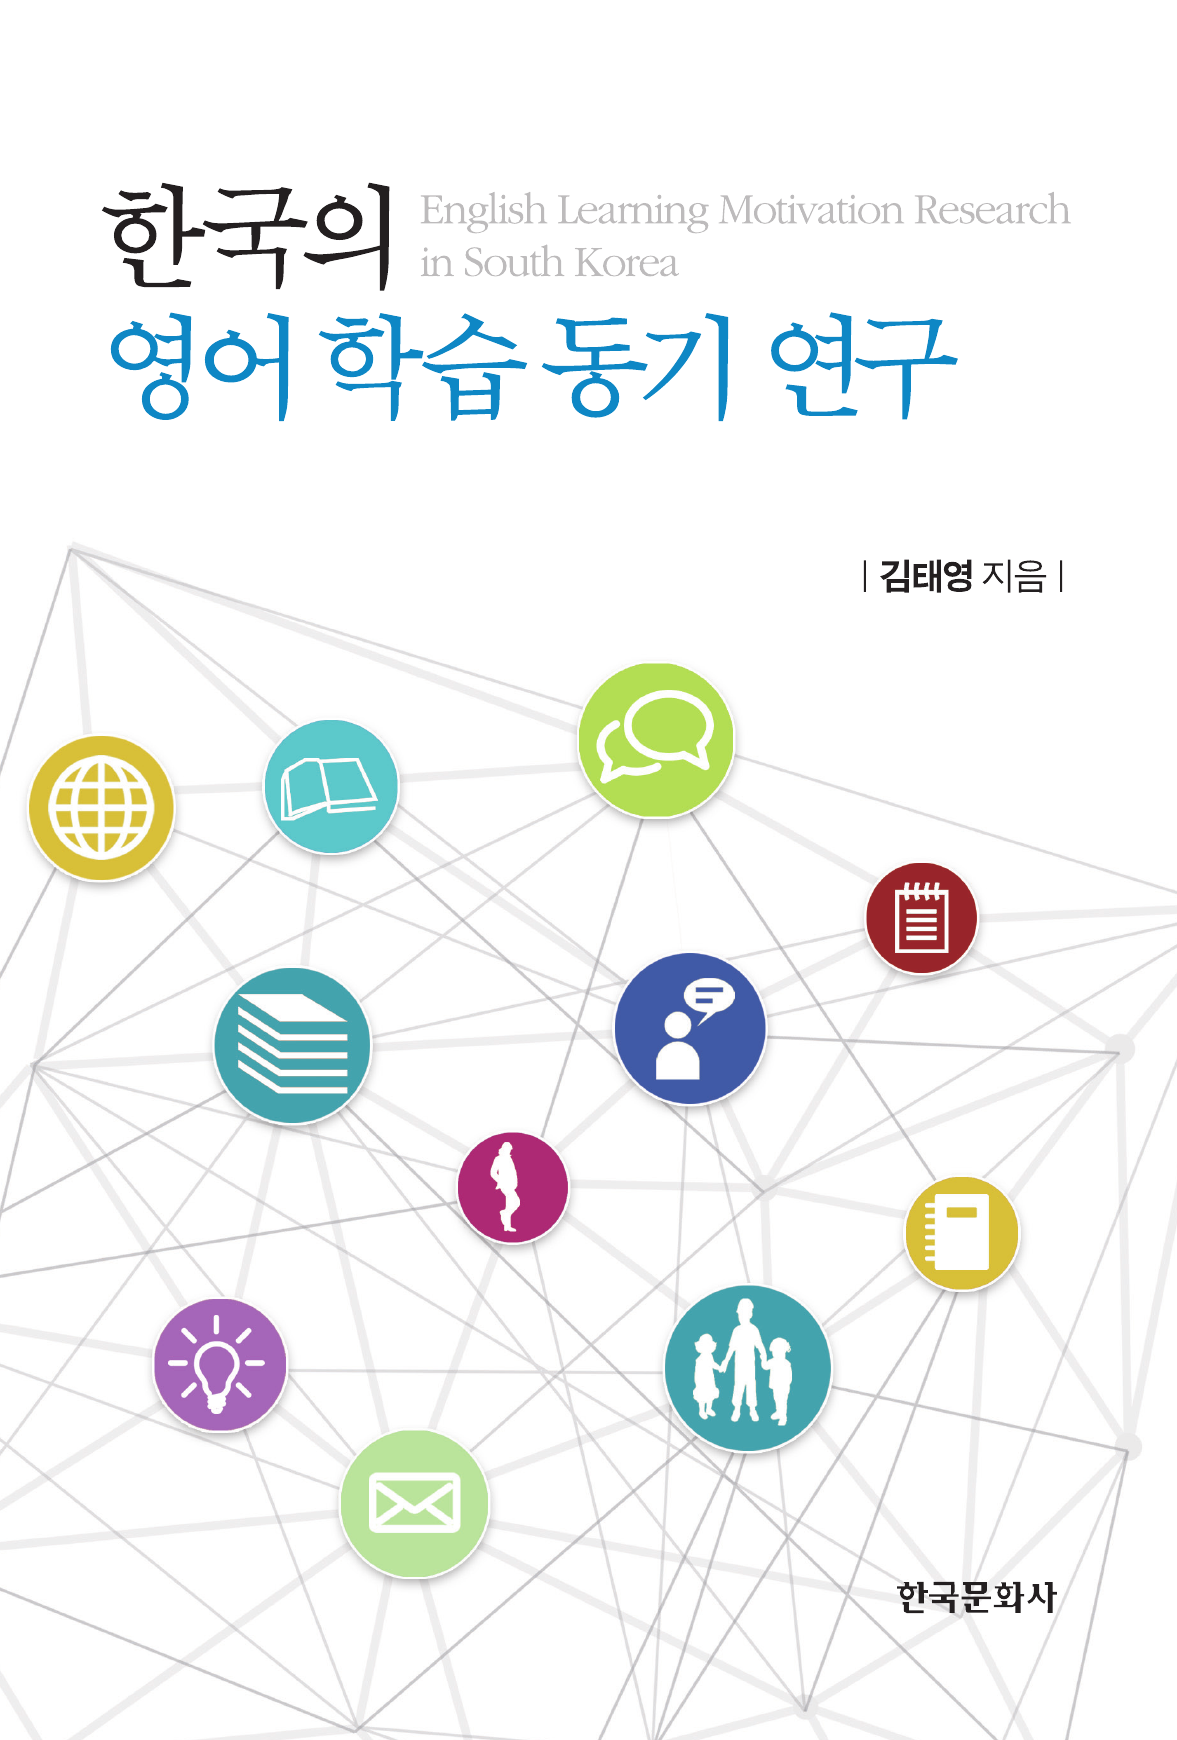 한국의 영어 학습 동기 연구